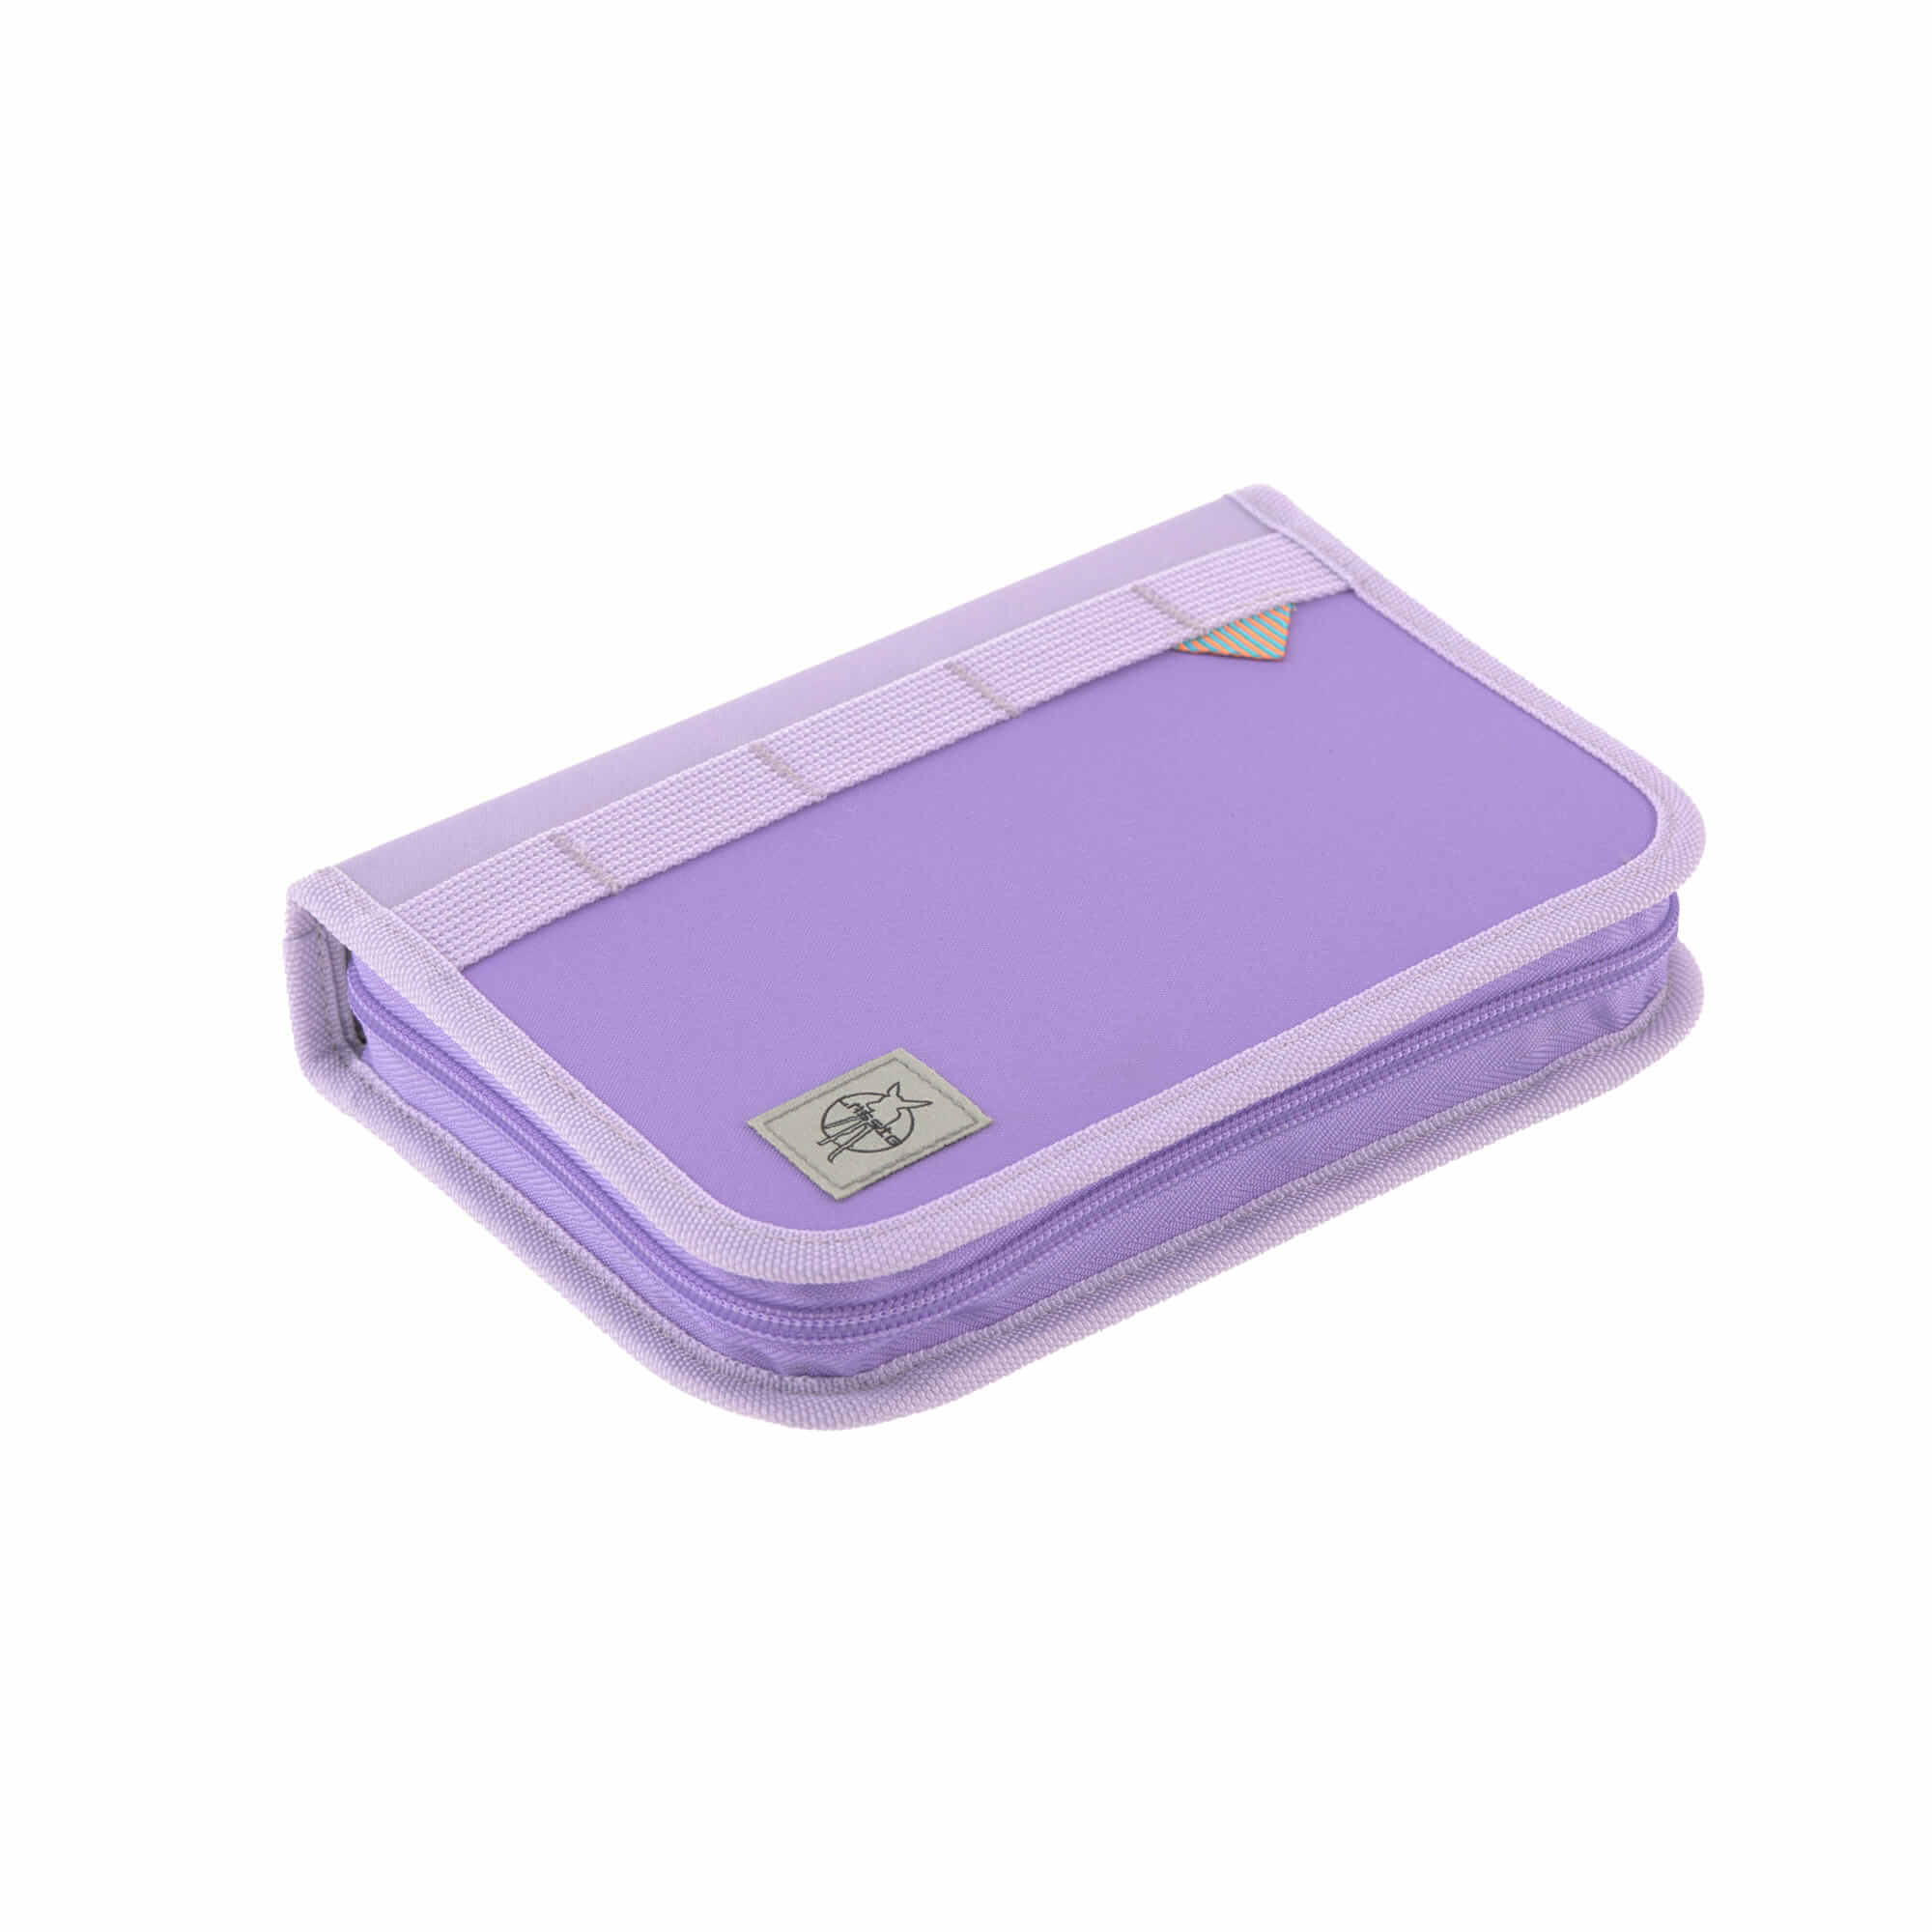 Lässig Fashion- Schulranzen Set Boxy Violet/Lavender Unique